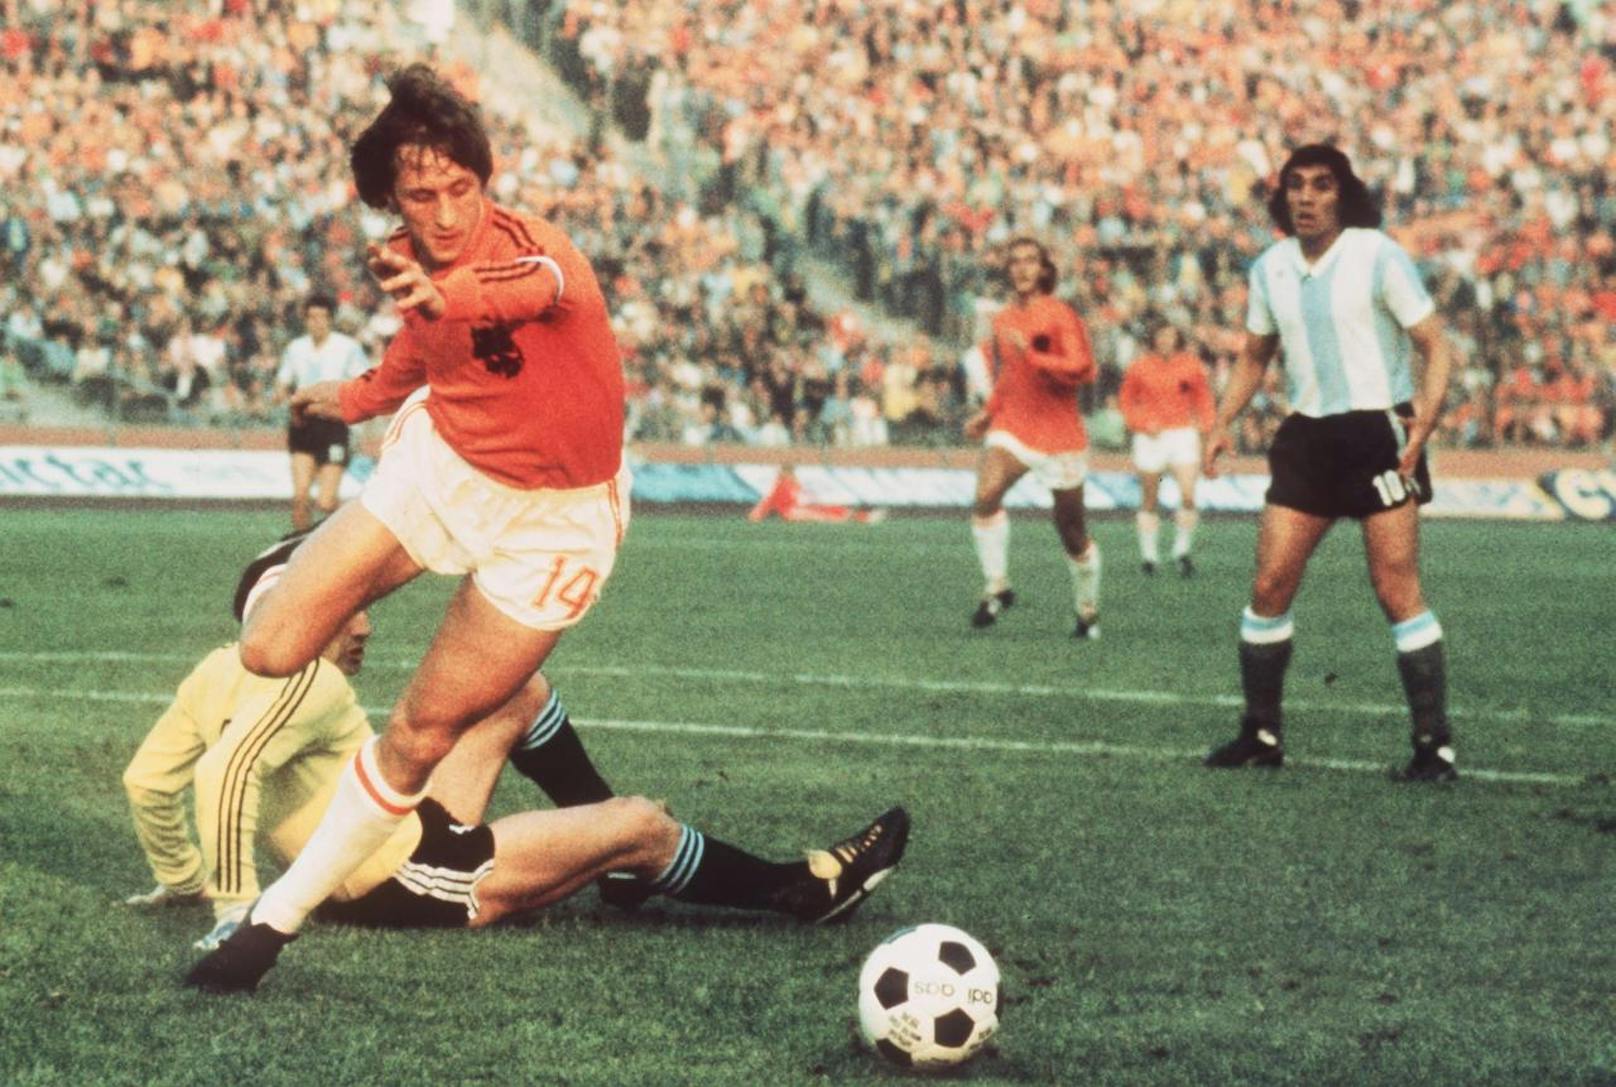 Platz 3: Johan Cruyff. Hollands Fußball-Ikone holte so wie Platini drei Mal den Ballon d'Or - 1971, 1973, 1974. Der Vize-Weltmeister von 1974 holte 23 Titel als Spieler, 14 als Trainer. Seine Klubs waren Ajax Amsterdam und der FC Barcelona. Dort prägte er einen ganzen Fußballstil.